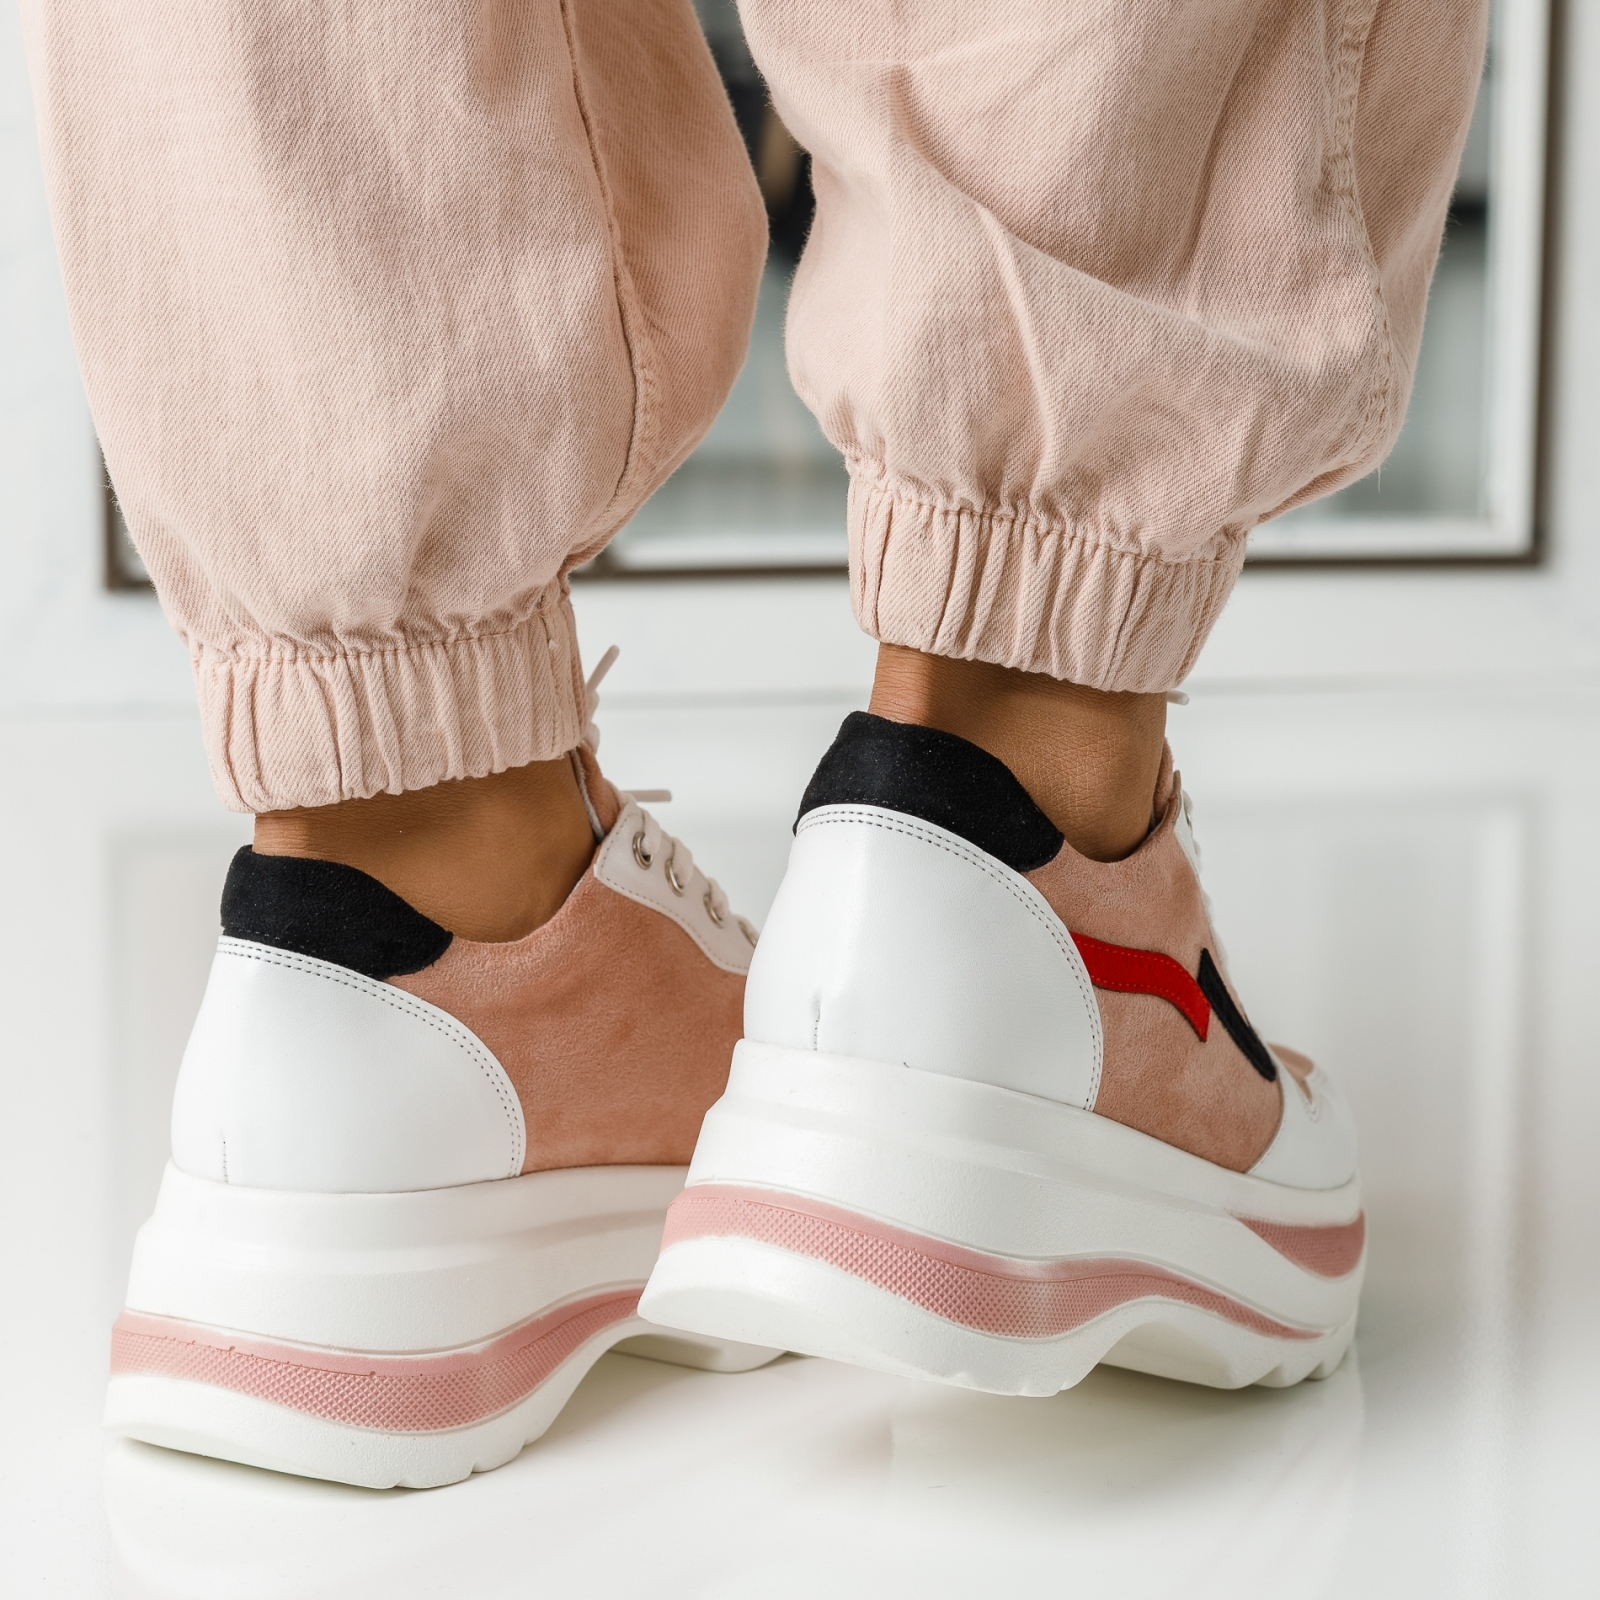 Дамски спортни обувки Inanna розово #2591M